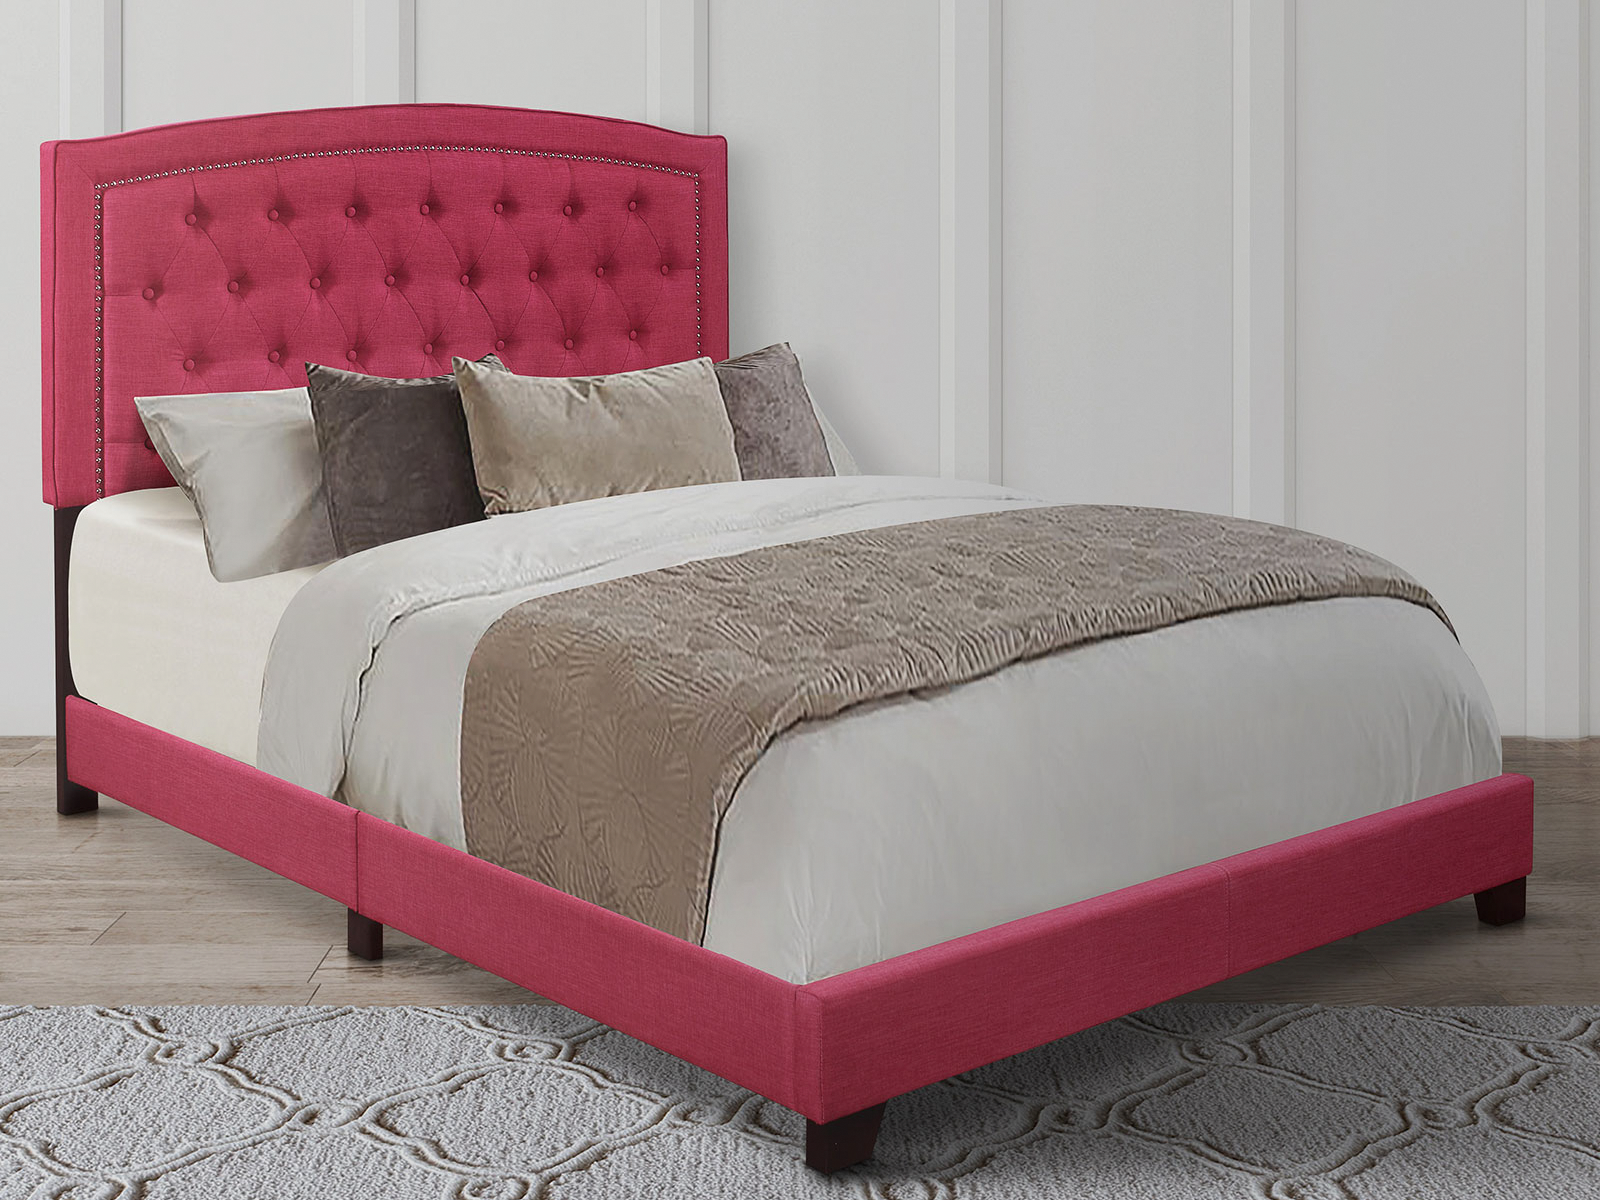 Homelegance Upholstered Bed Set | King | Linden Bed Frame & Headboard | Pink